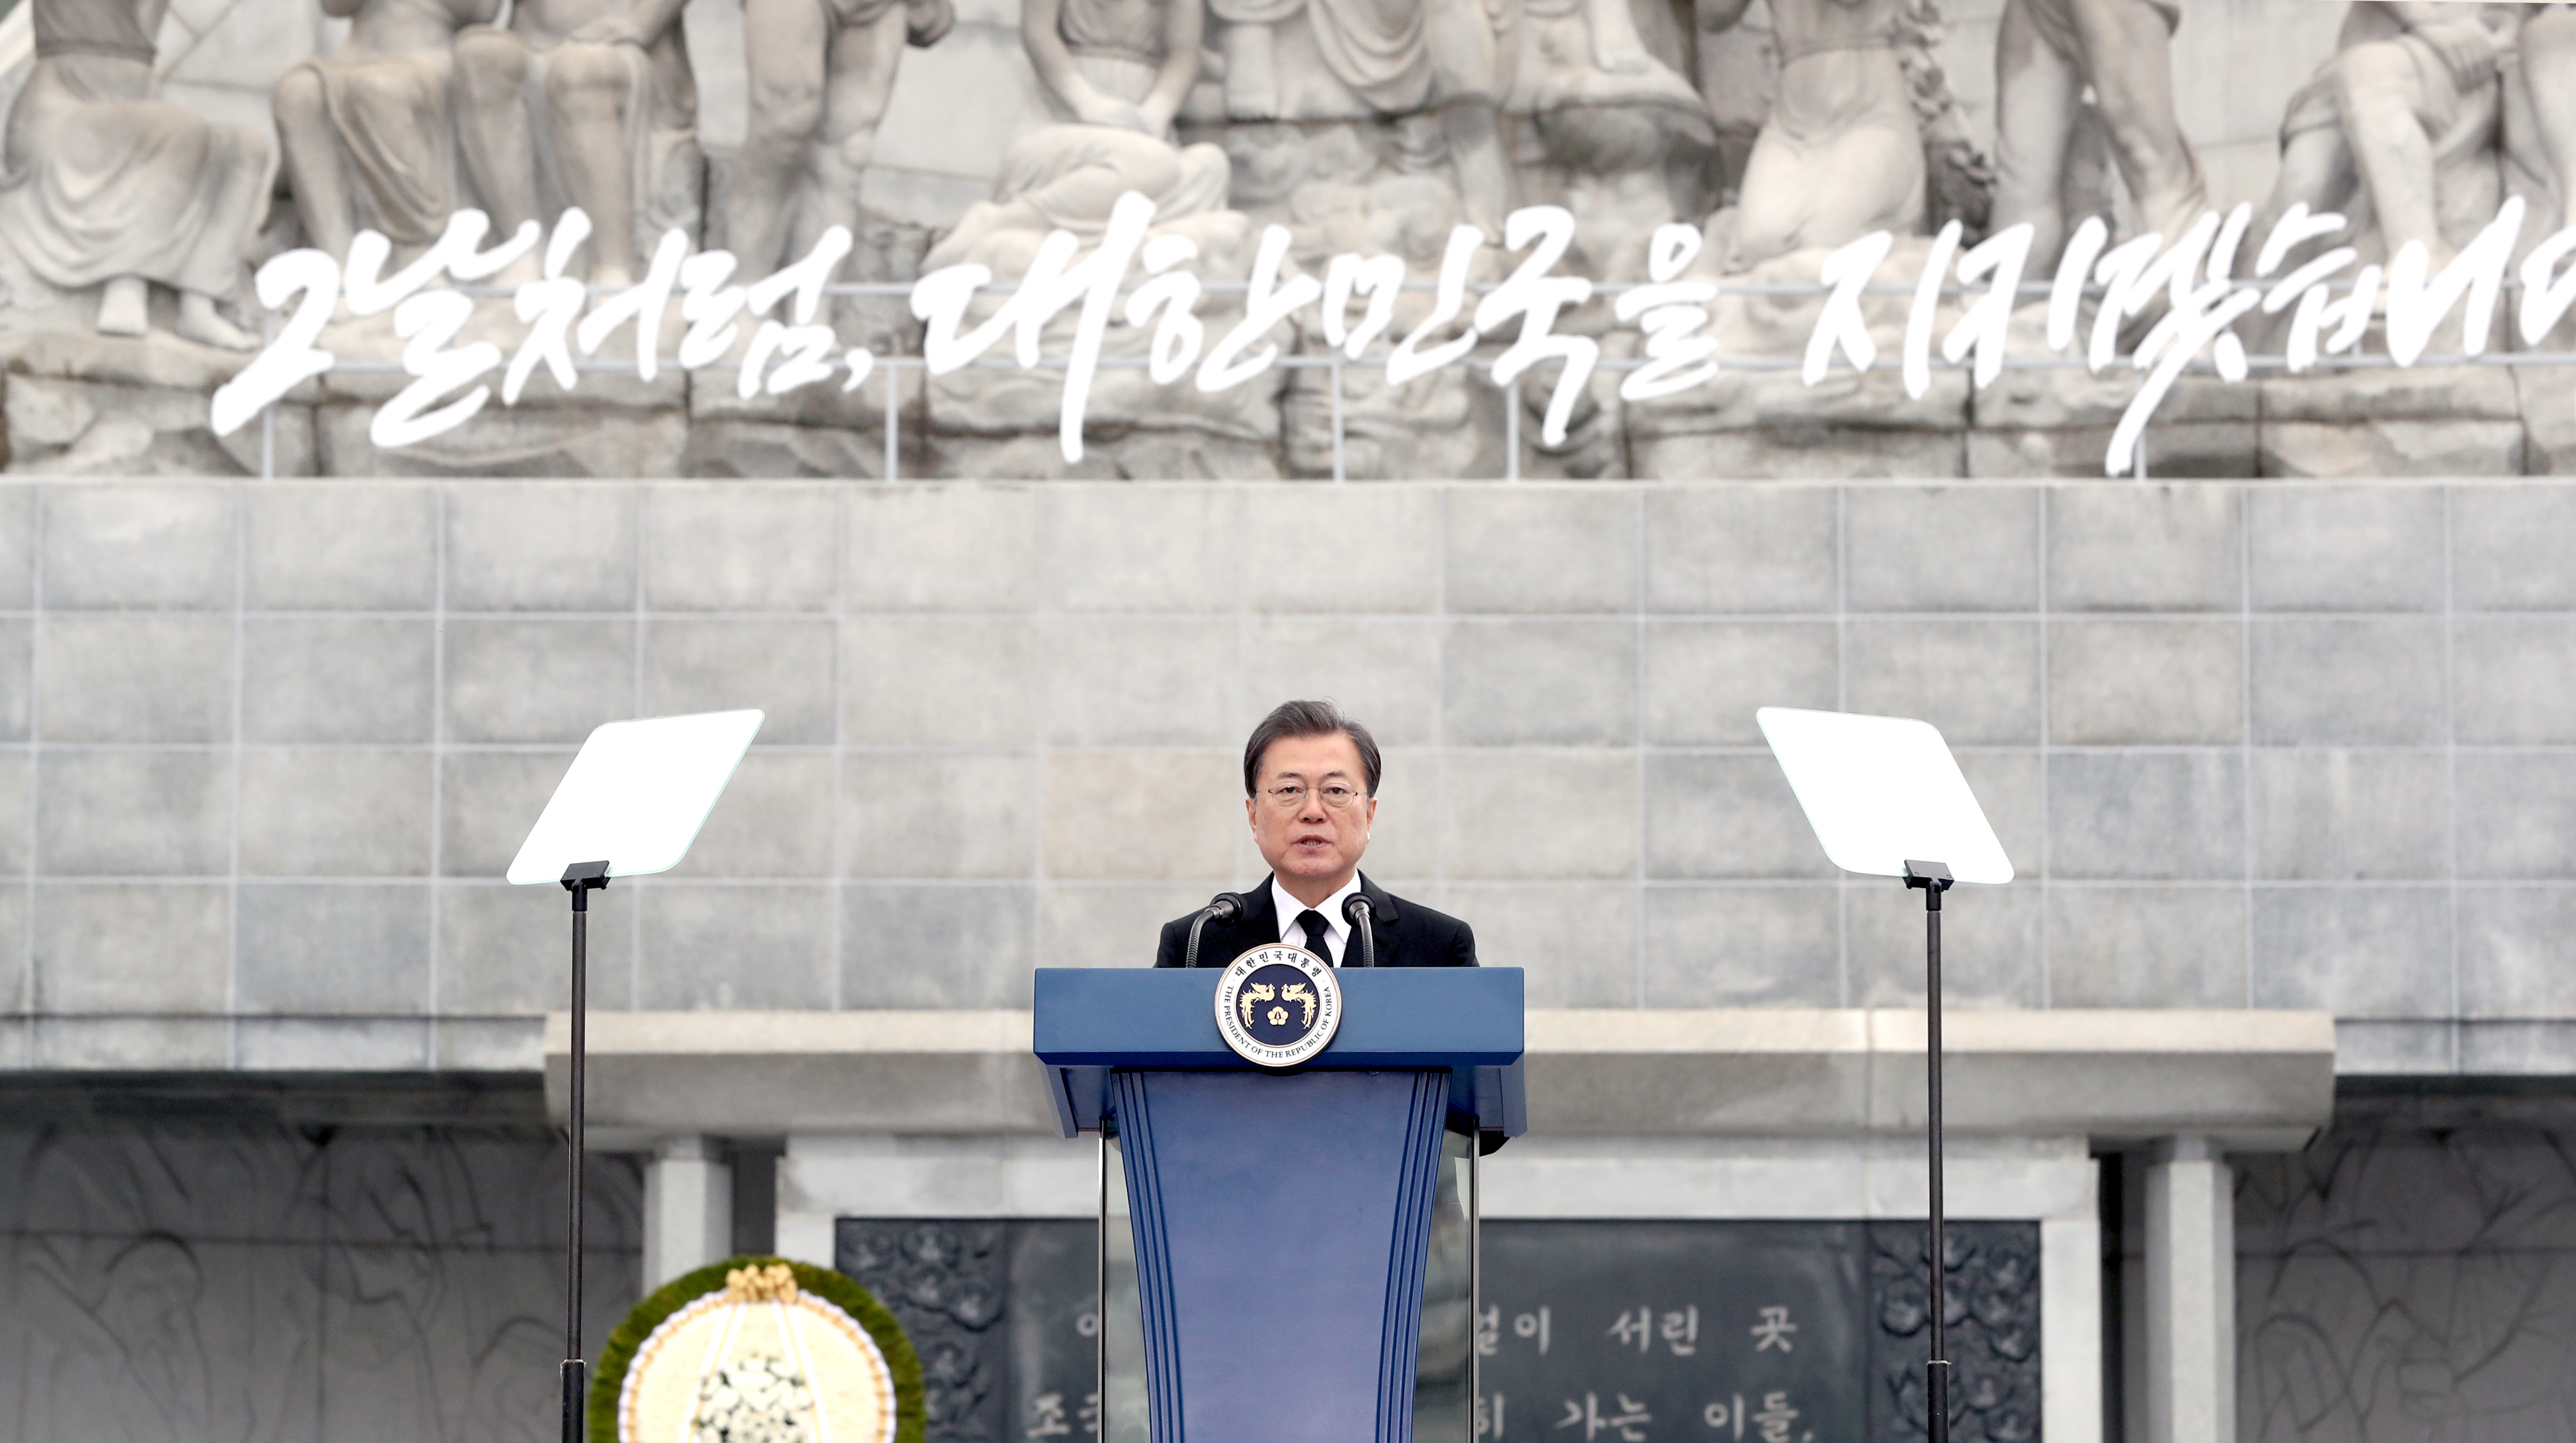 문재인 대통령이 지난 26일 국립대전현충원에서 ‘서해수호의 날’ 기념사를 하고 있다. 사진출처: 연합뉴스